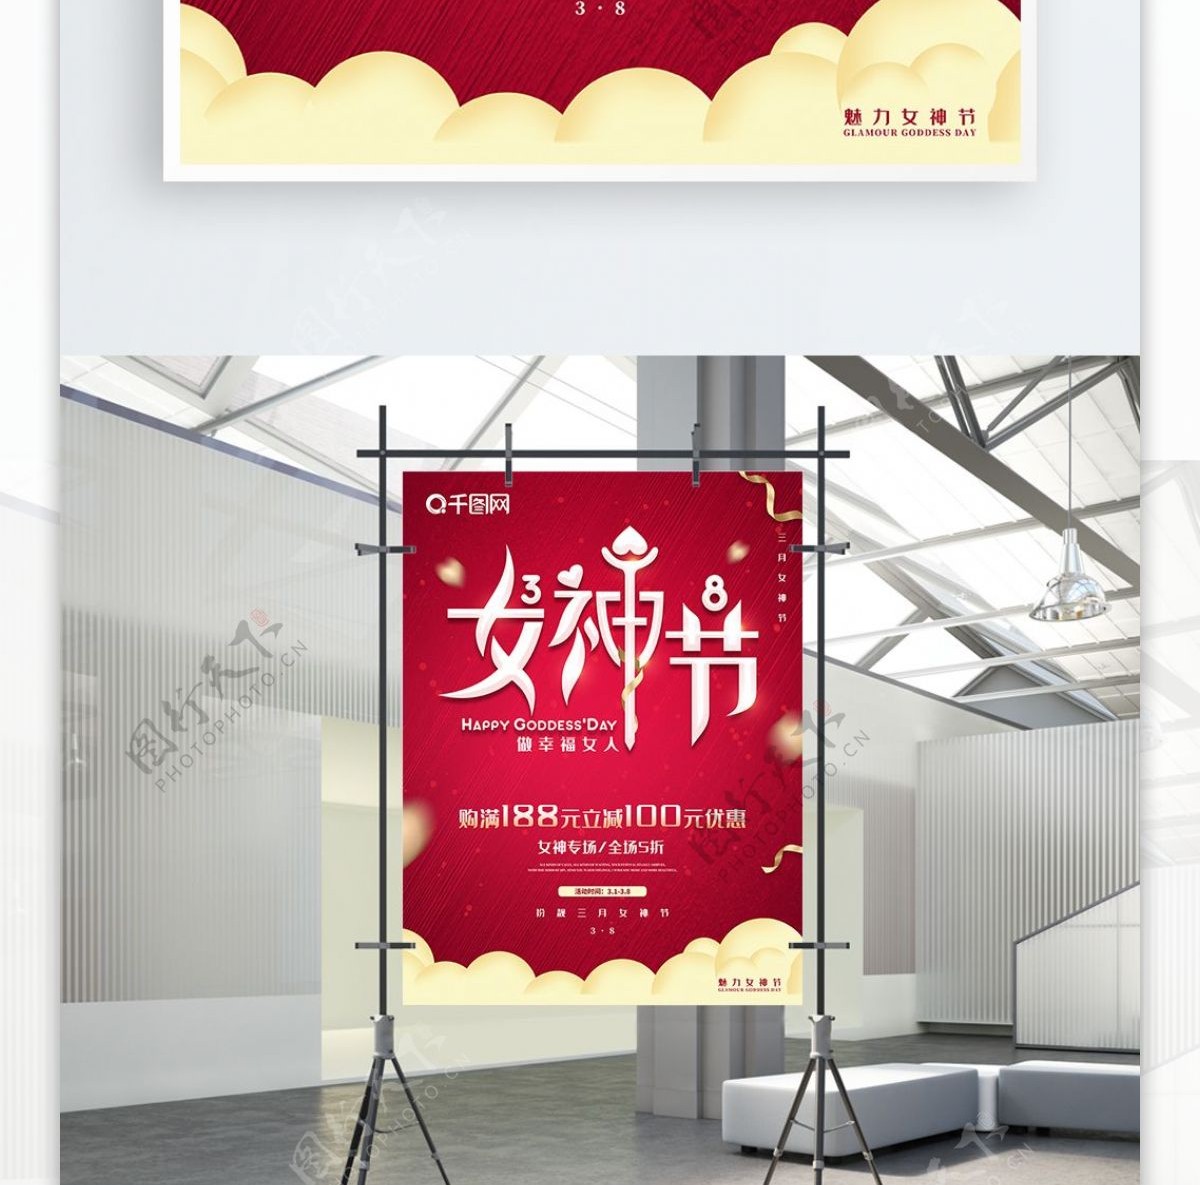 红色大气38妇女节女神节节日宣传海报